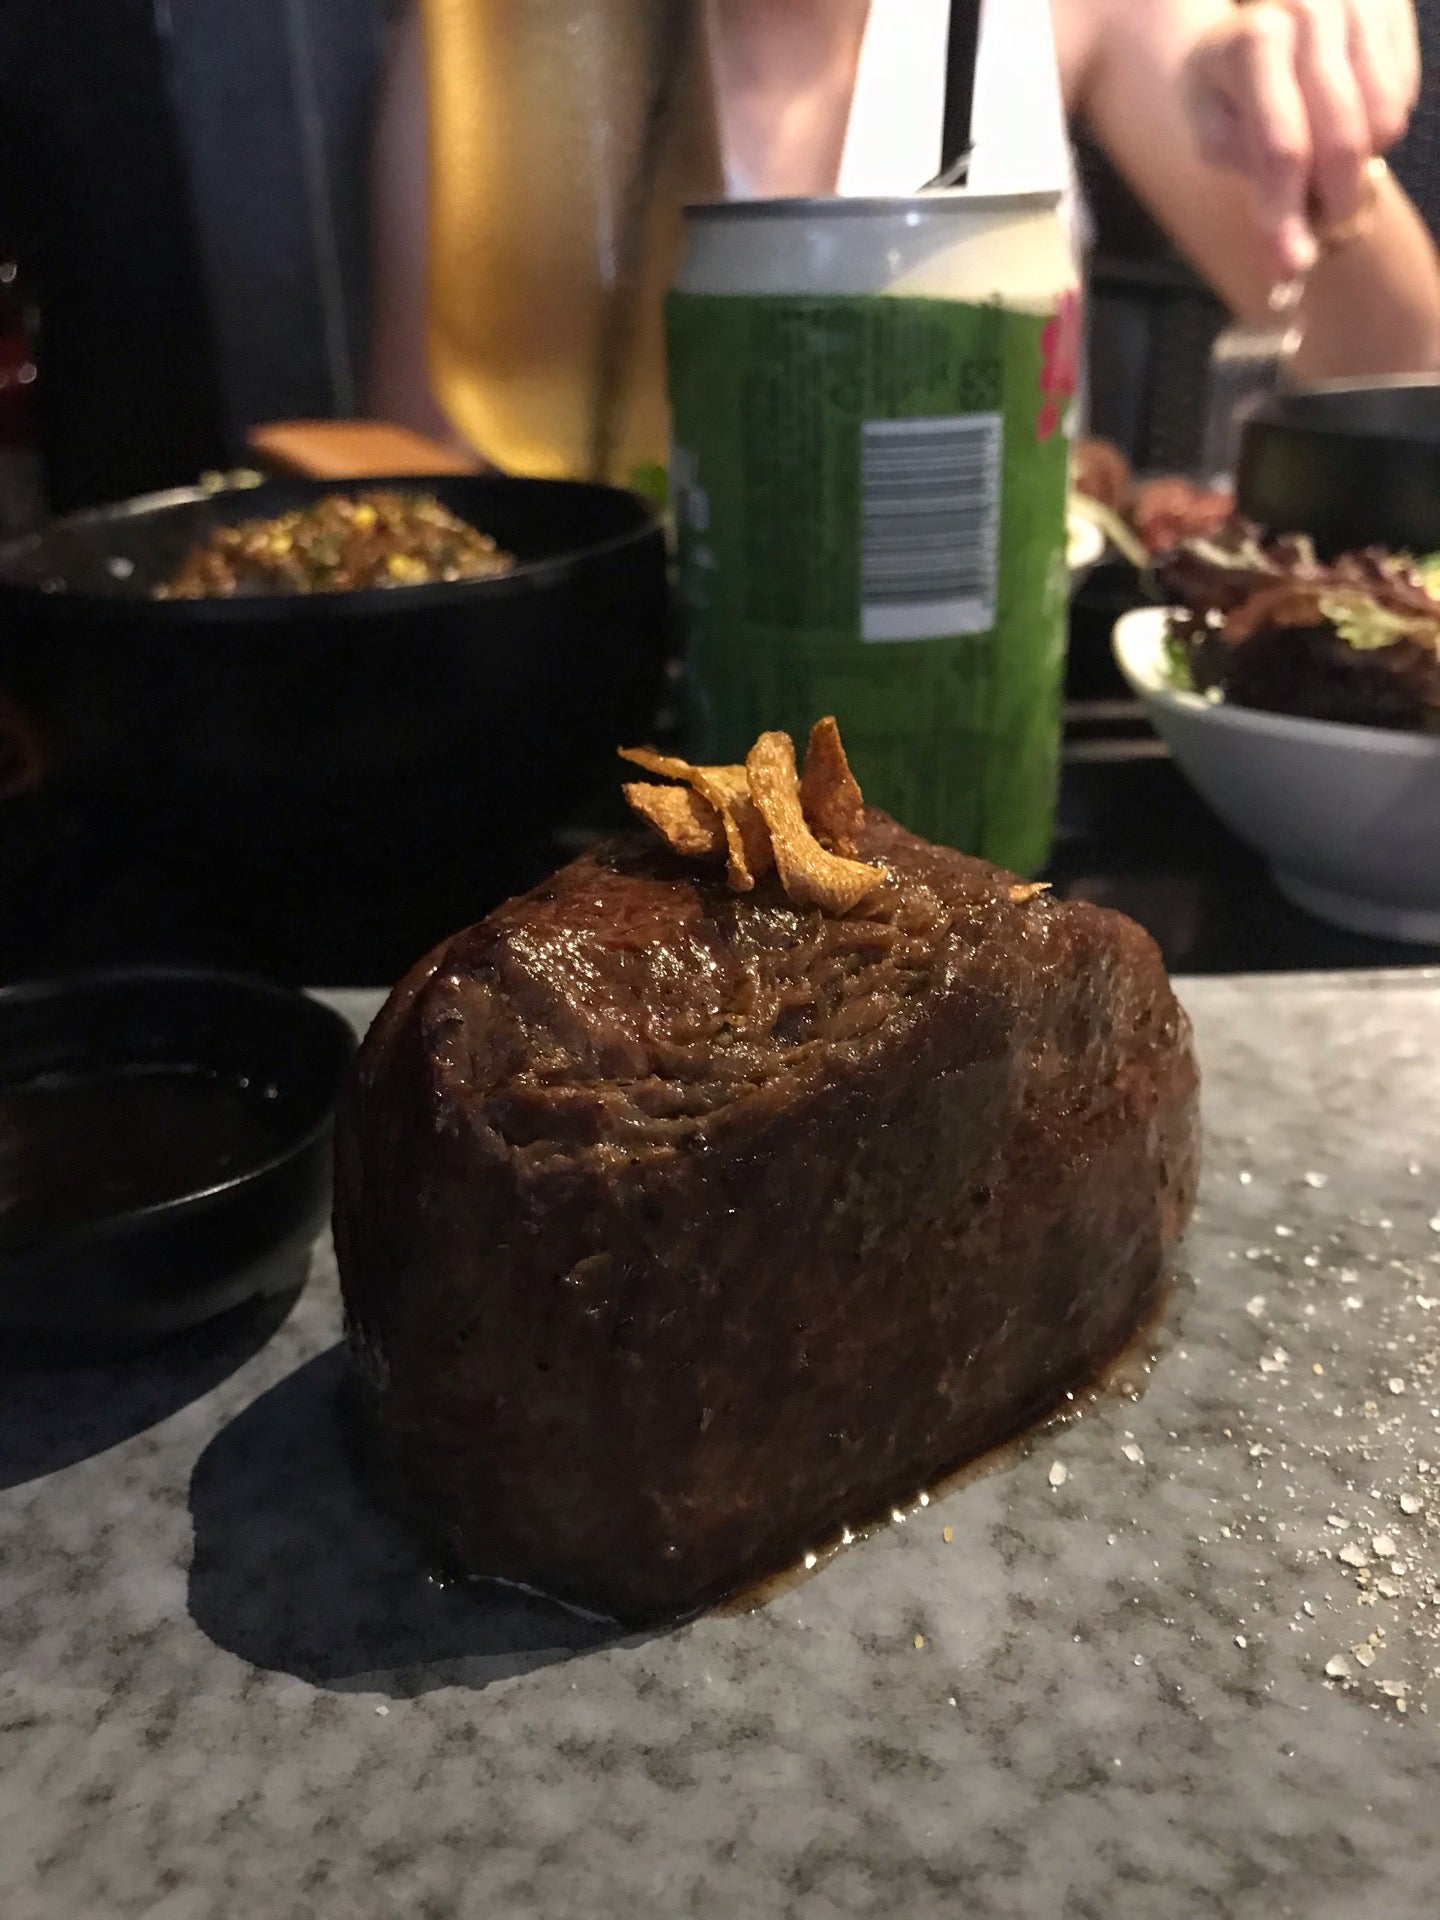 Steak Bar